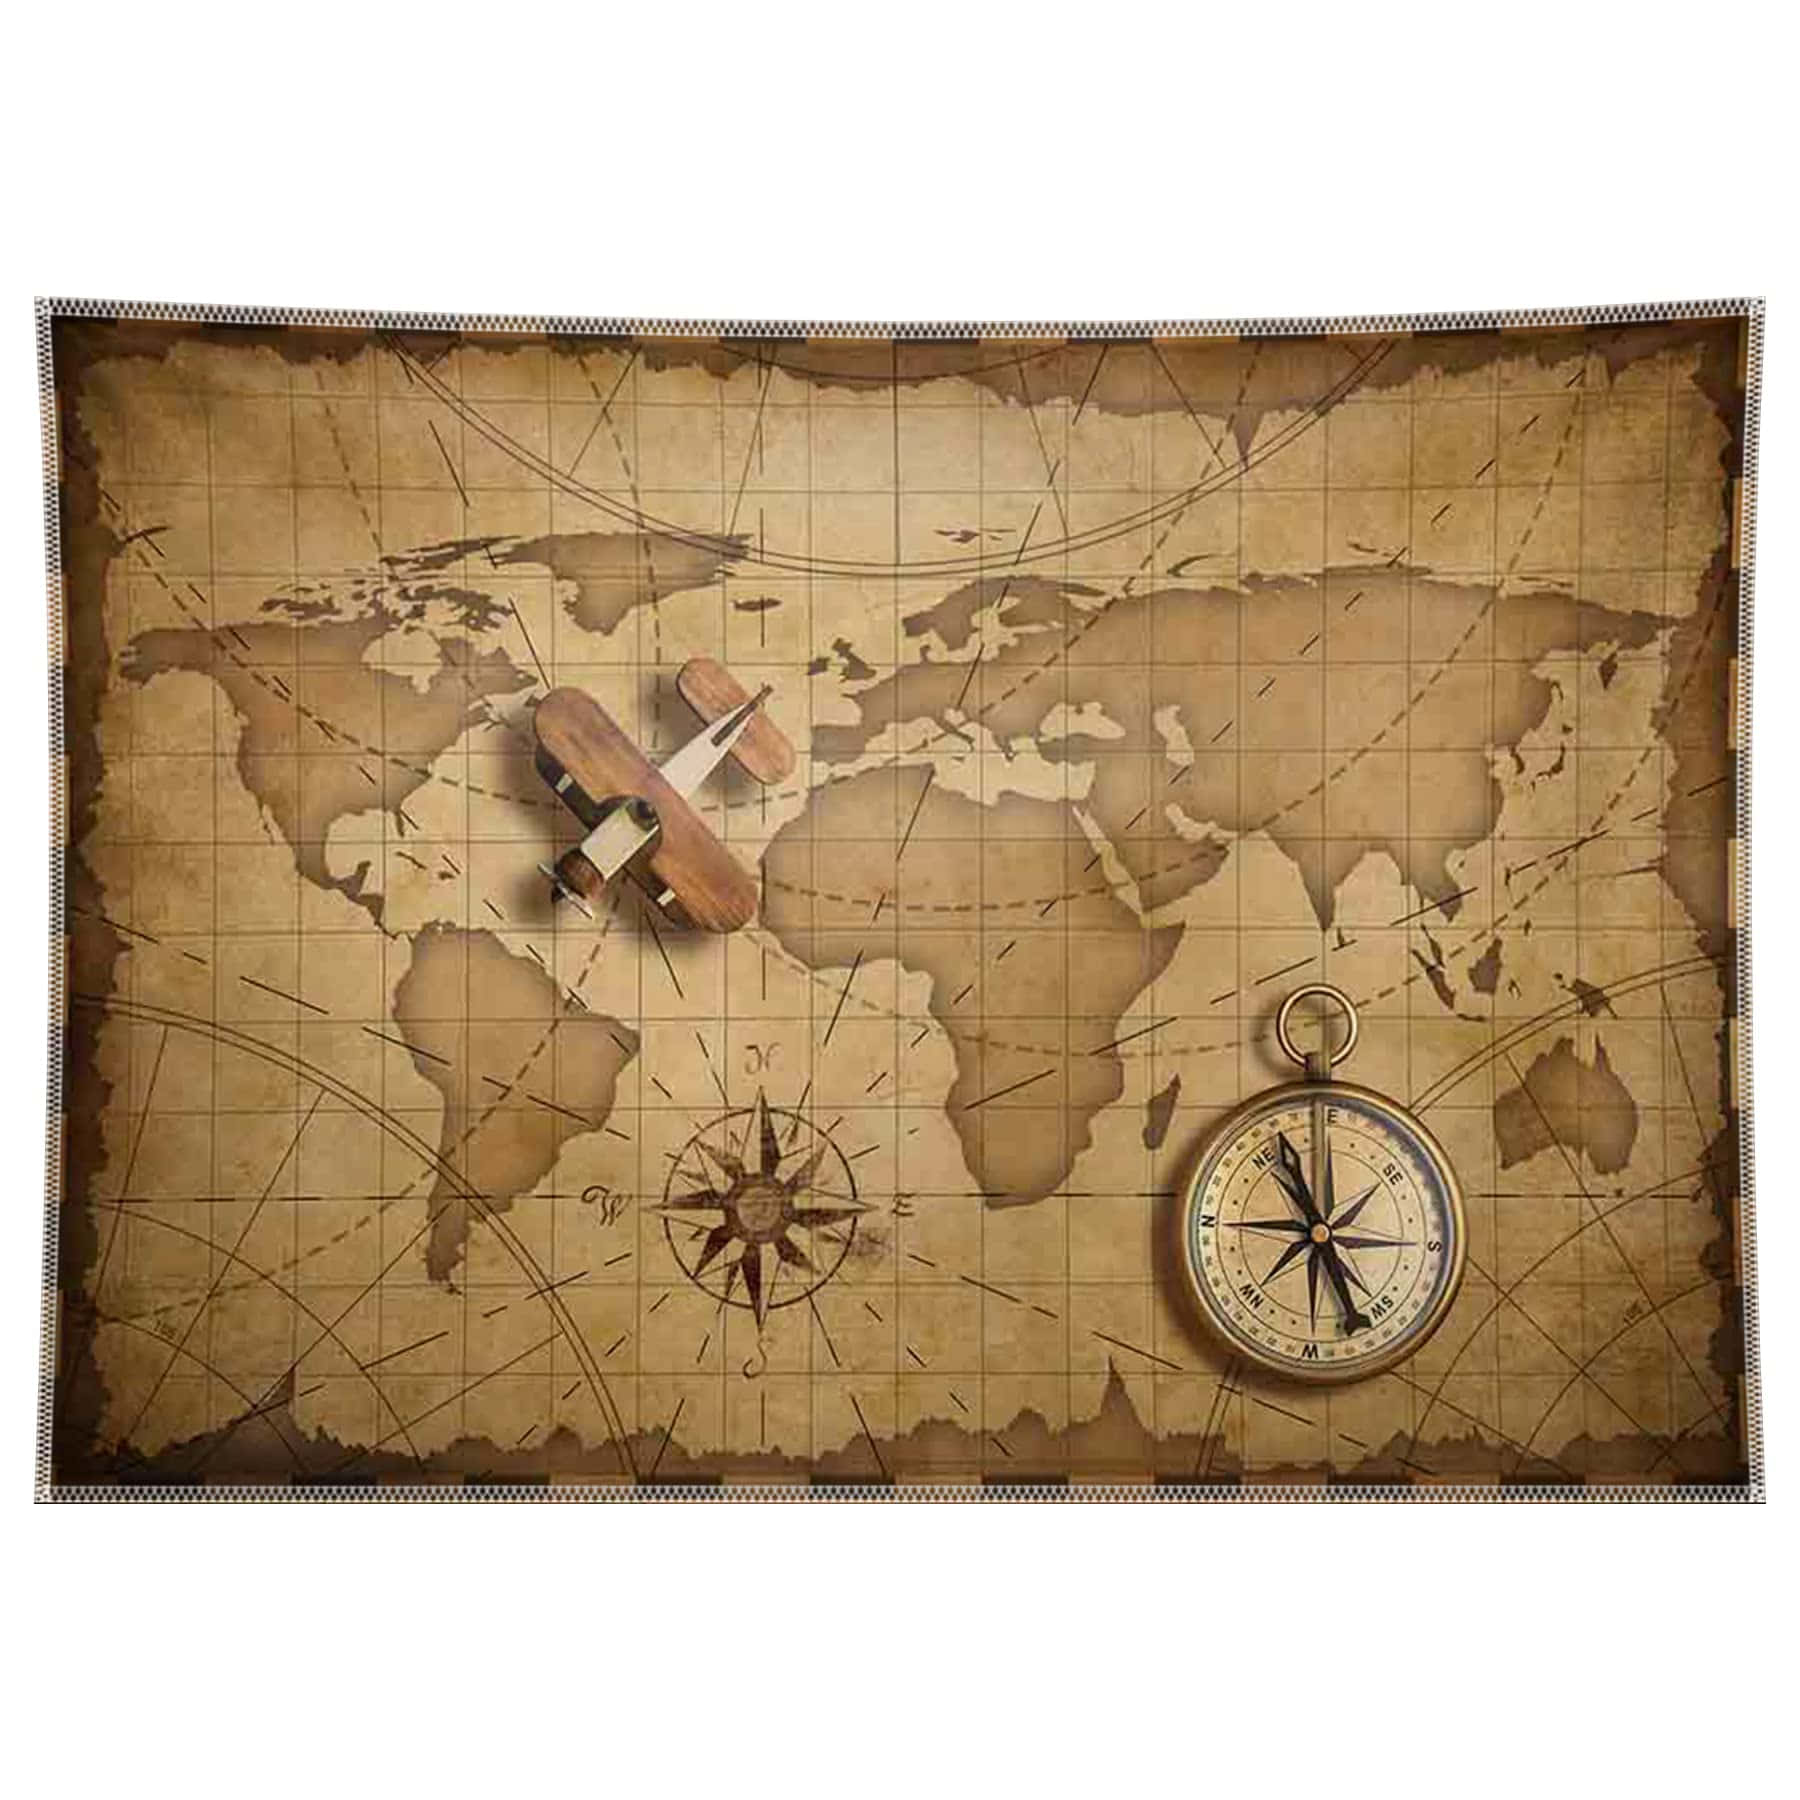 Fondode Pantalla Con Mapa Del Mundo.